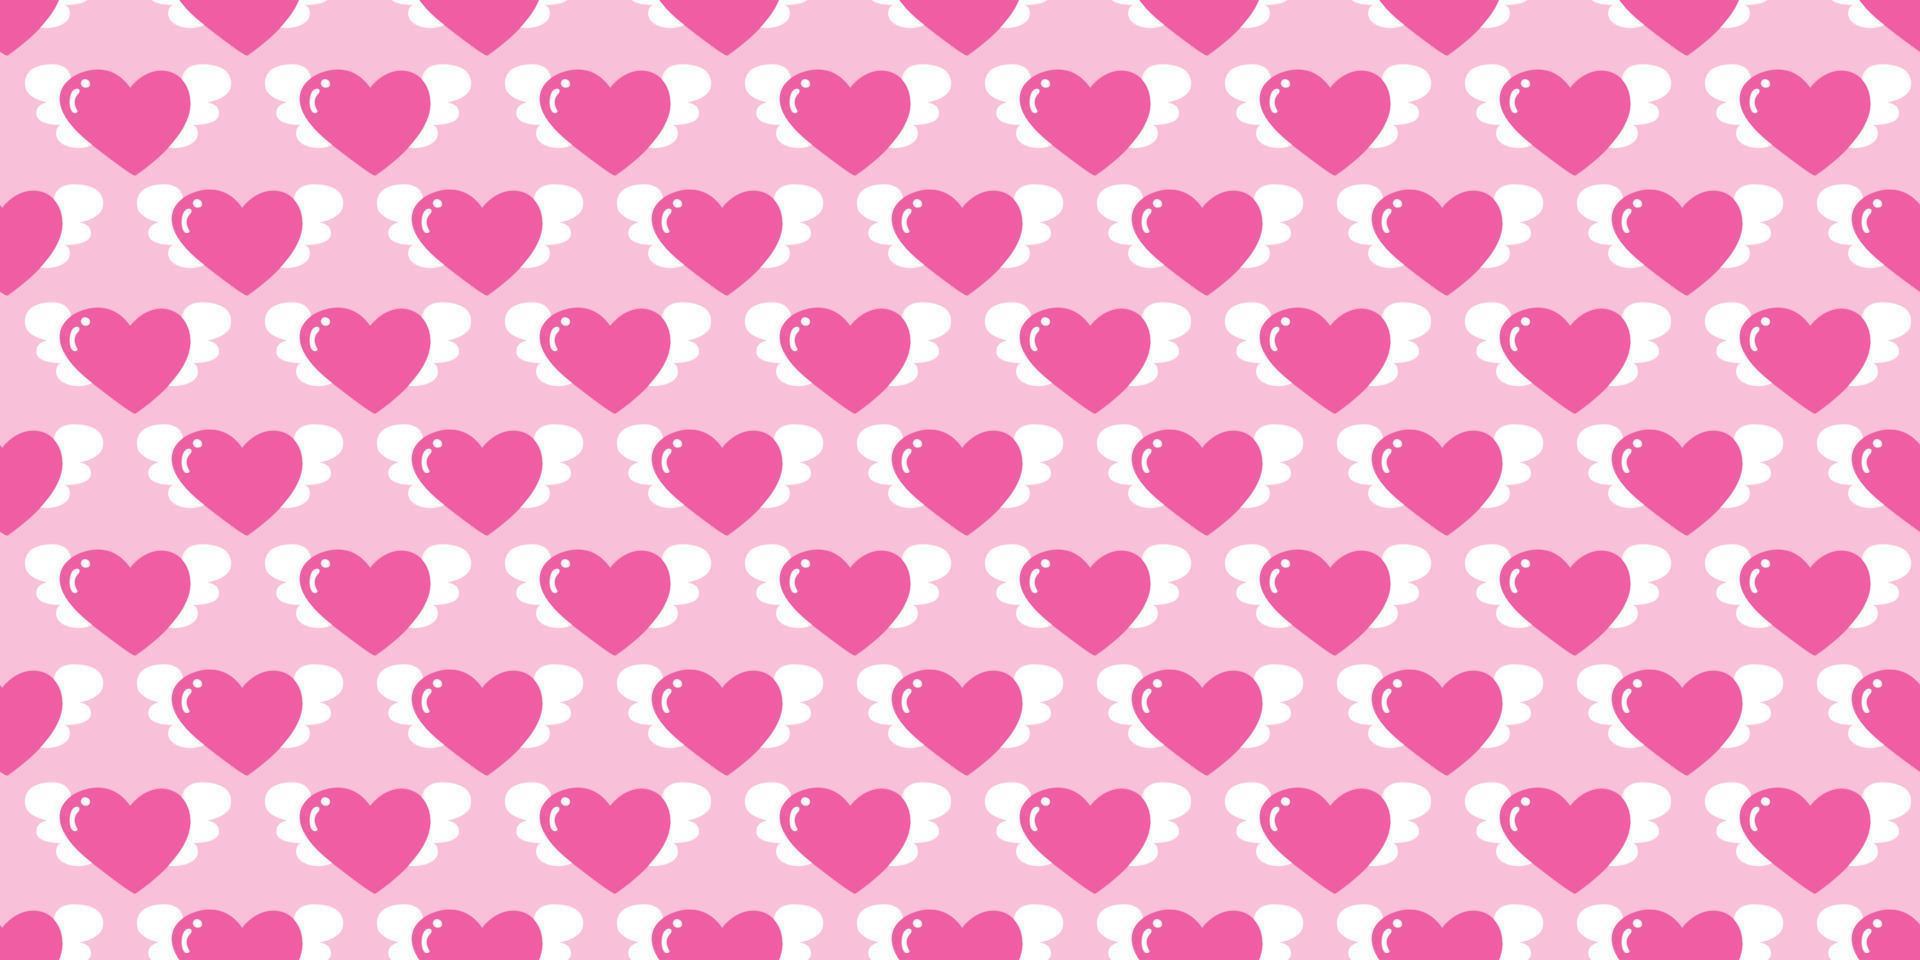 hermoso patrón rosa. corazón con una ilustración de dibujos animados de alas. mosca del corazón con alas de ángel en estilo garabato. lindo corazón para decorar la tarjeta de boda para el día de san valentín, concepto de amor. vector